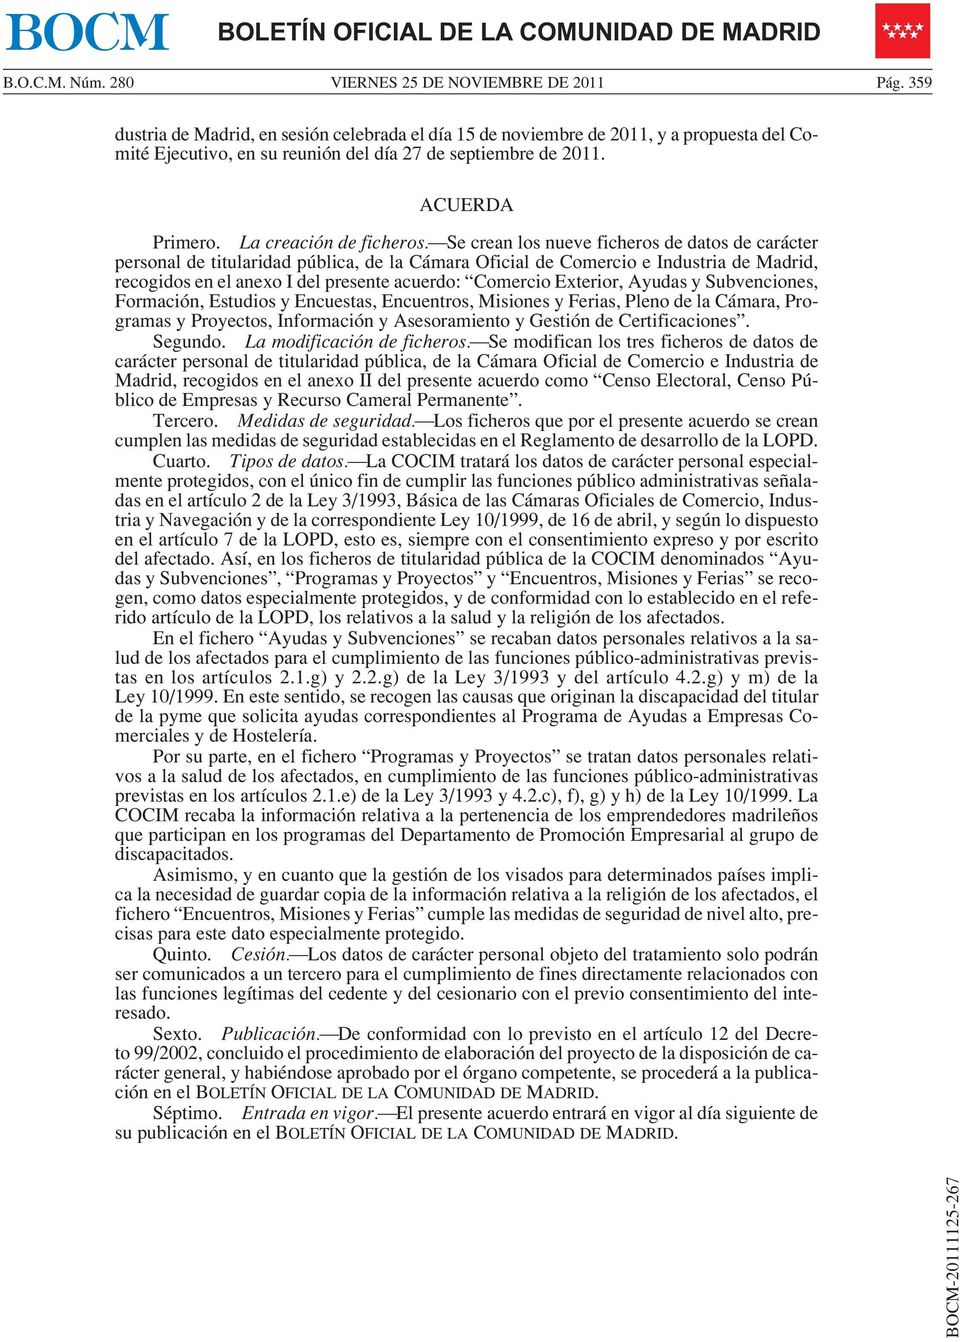 Se crean los nueve ficheros de datos de carácter personal de titularidad pública, de la Cámara Oficial de Comercio e Industria de Madrid, recogidos en el anexo I del presente acuerdo: Comercio